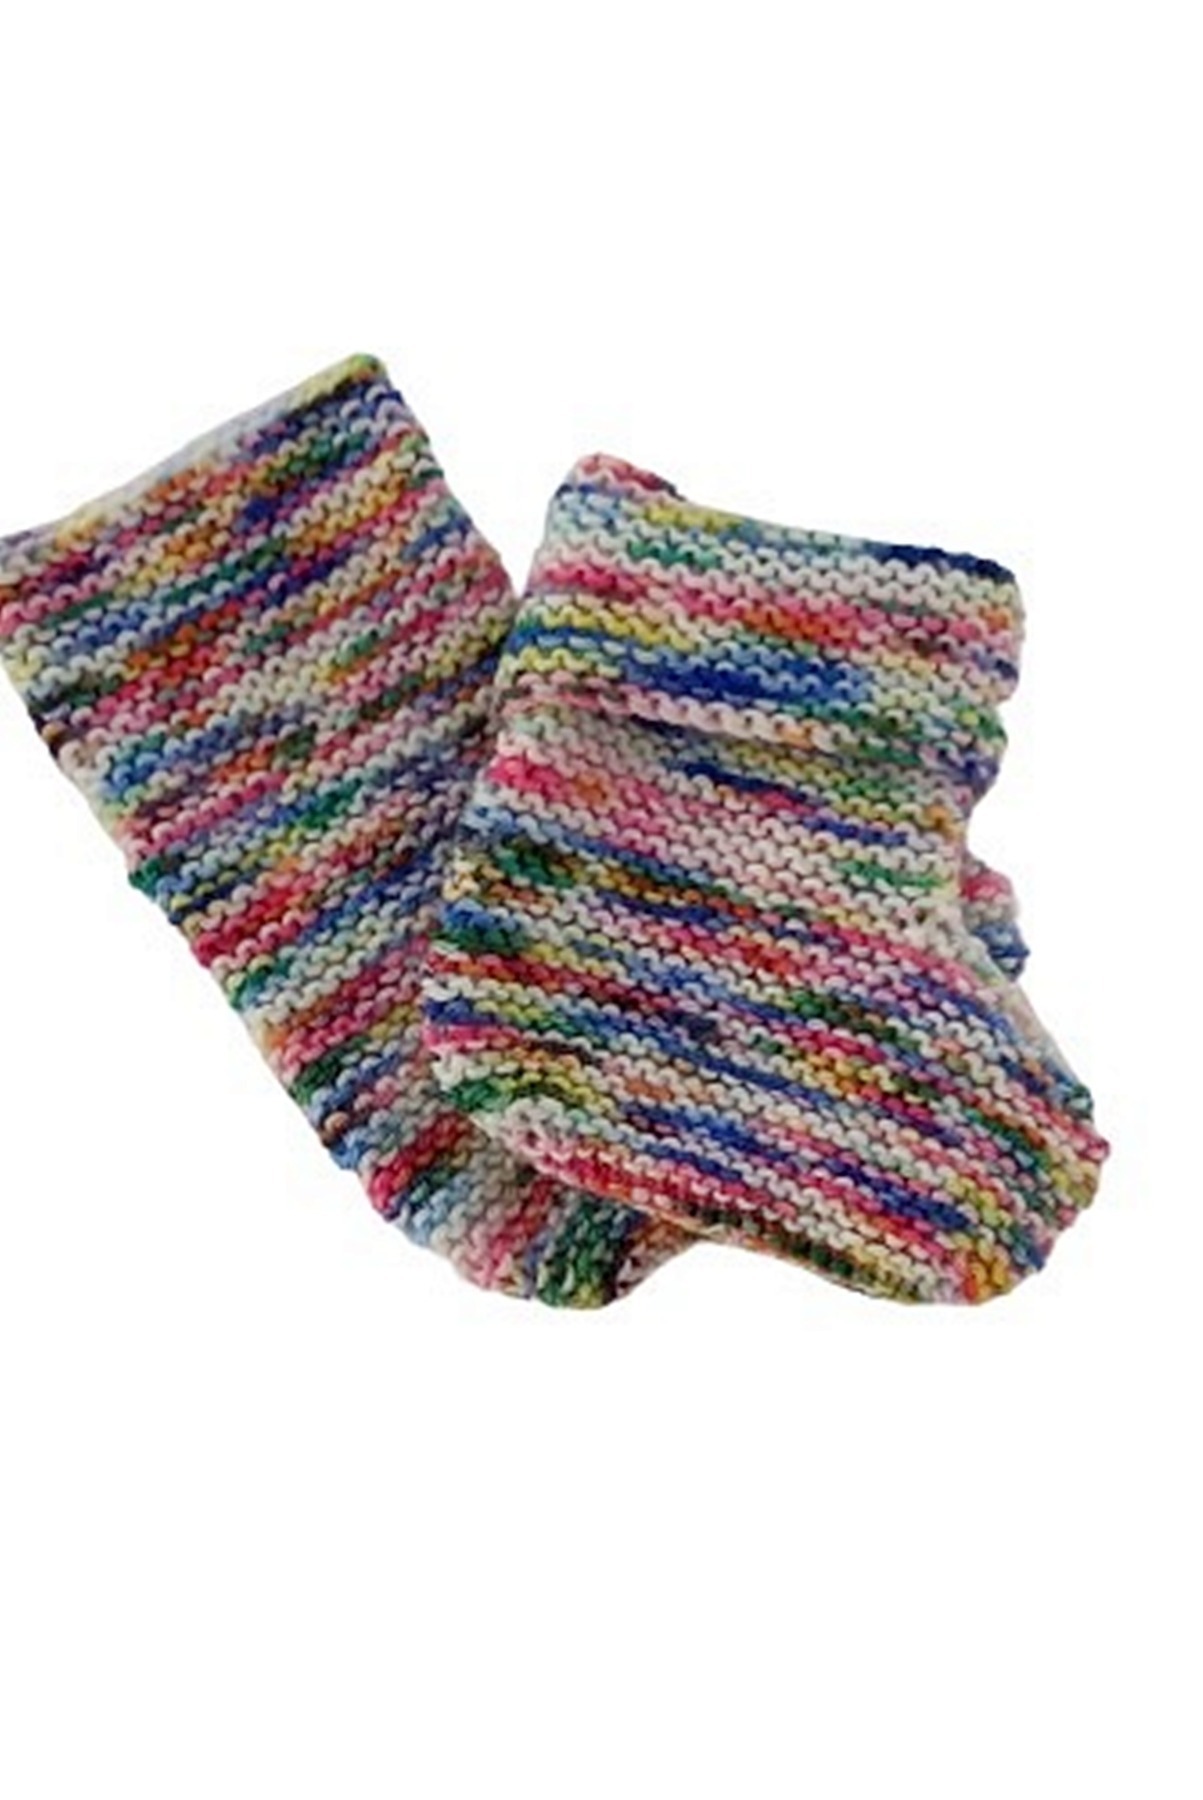 Babyschuhe ca. 10 cm Fußlänge - handgestrickt aus handgefärbter Sockenwolle 2